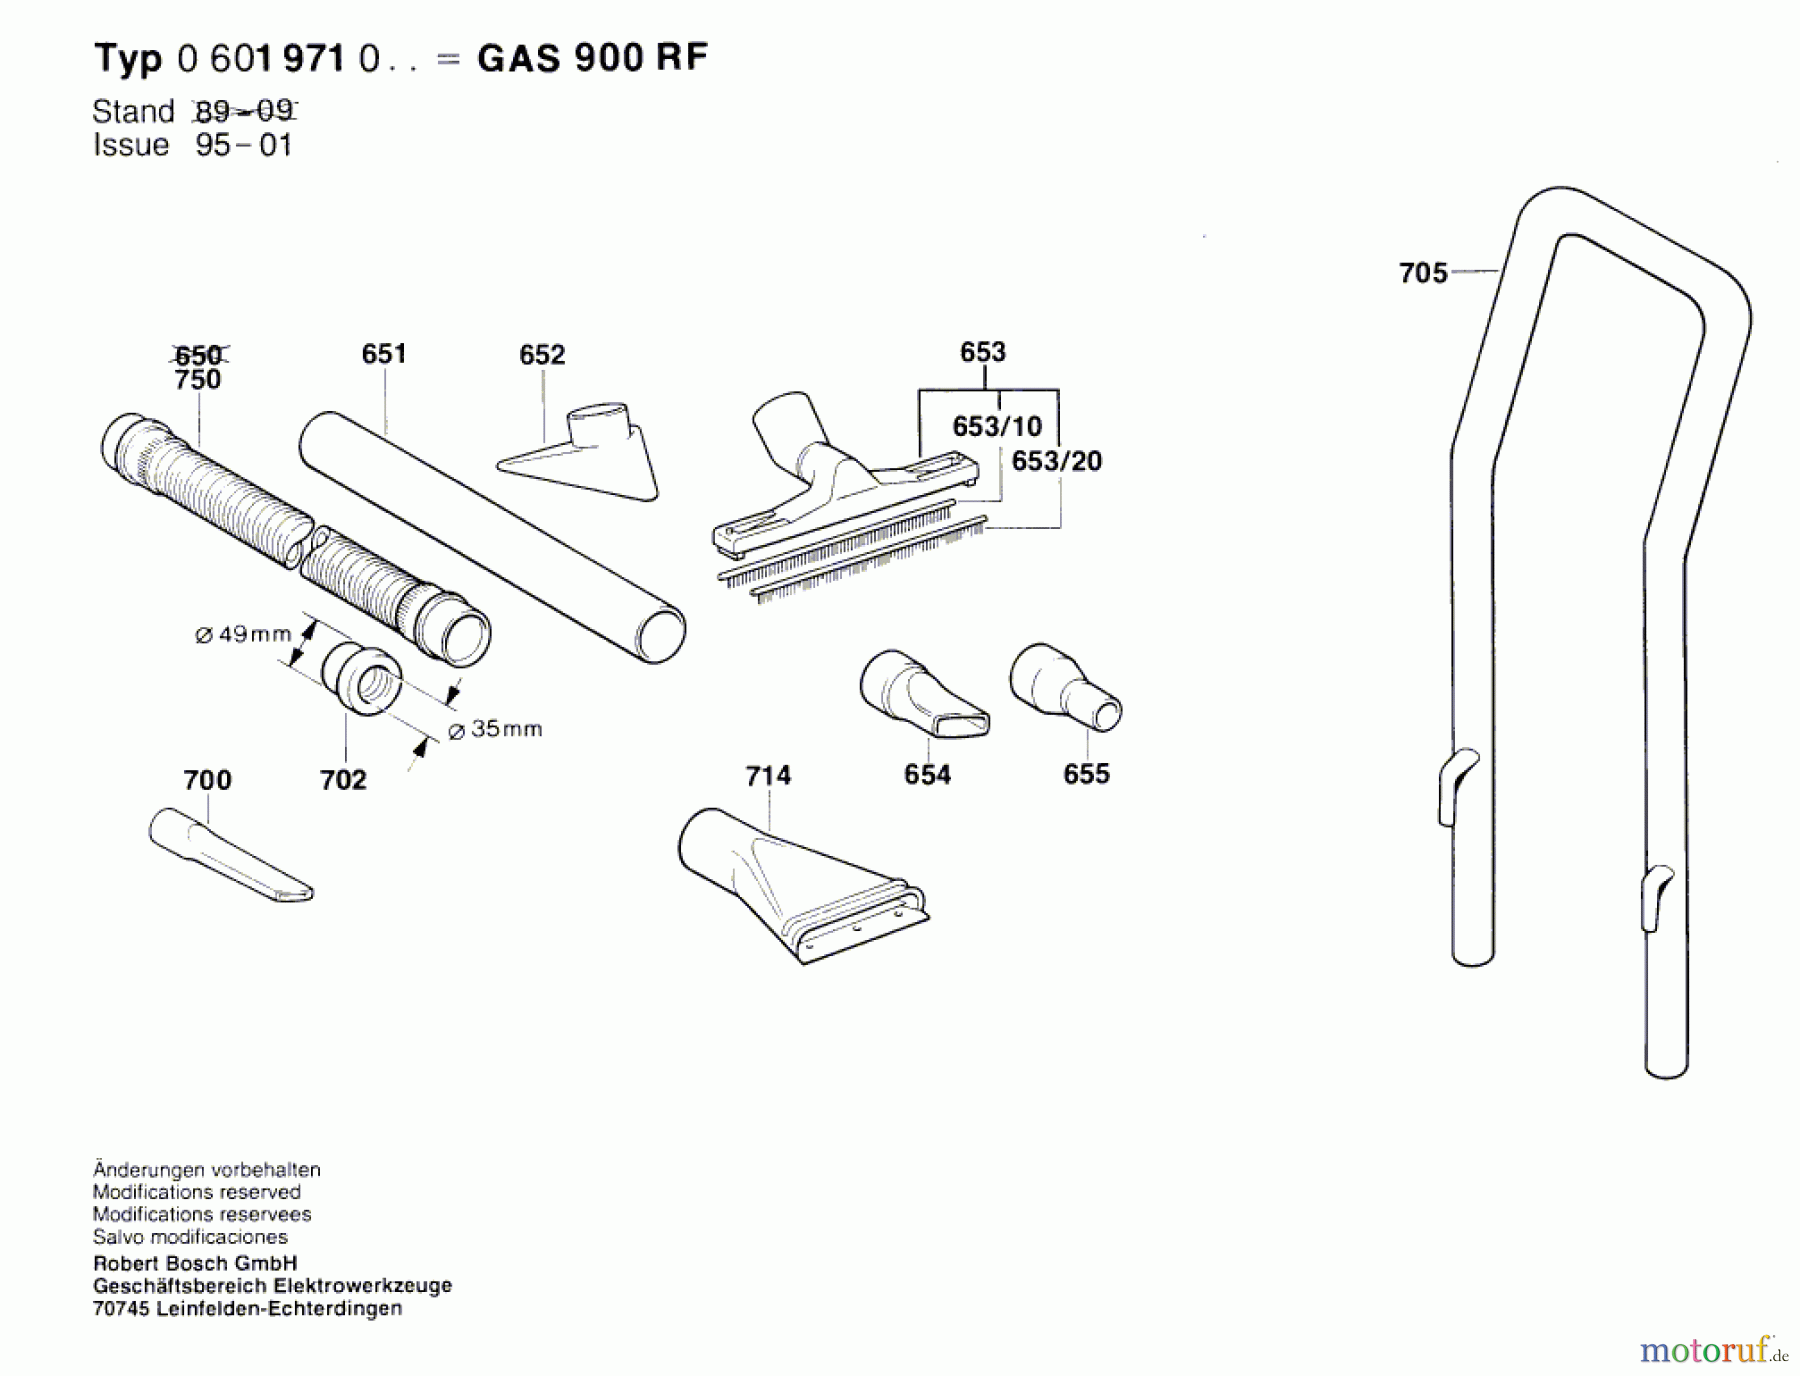  Bosch Werkzeug Gw-Allzwecksauger GAS 900 RF Seite 2